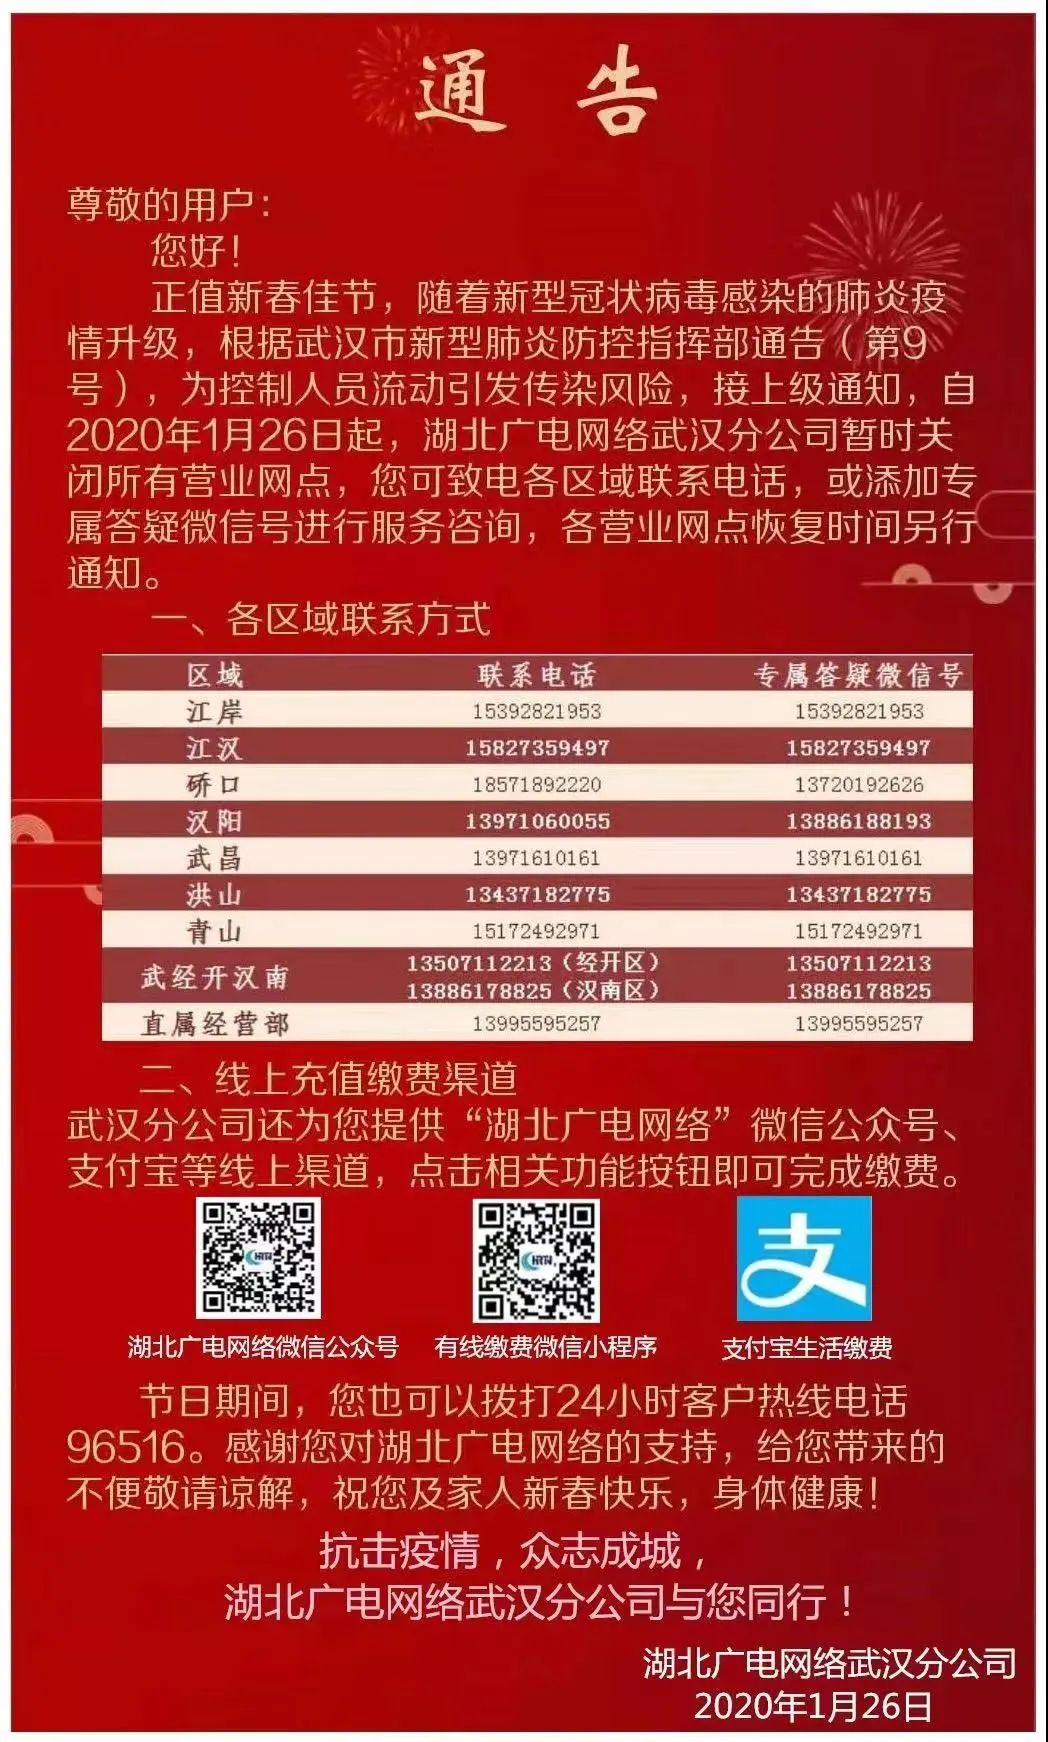 【一线】战疫当前,湖北广电网络武汉分